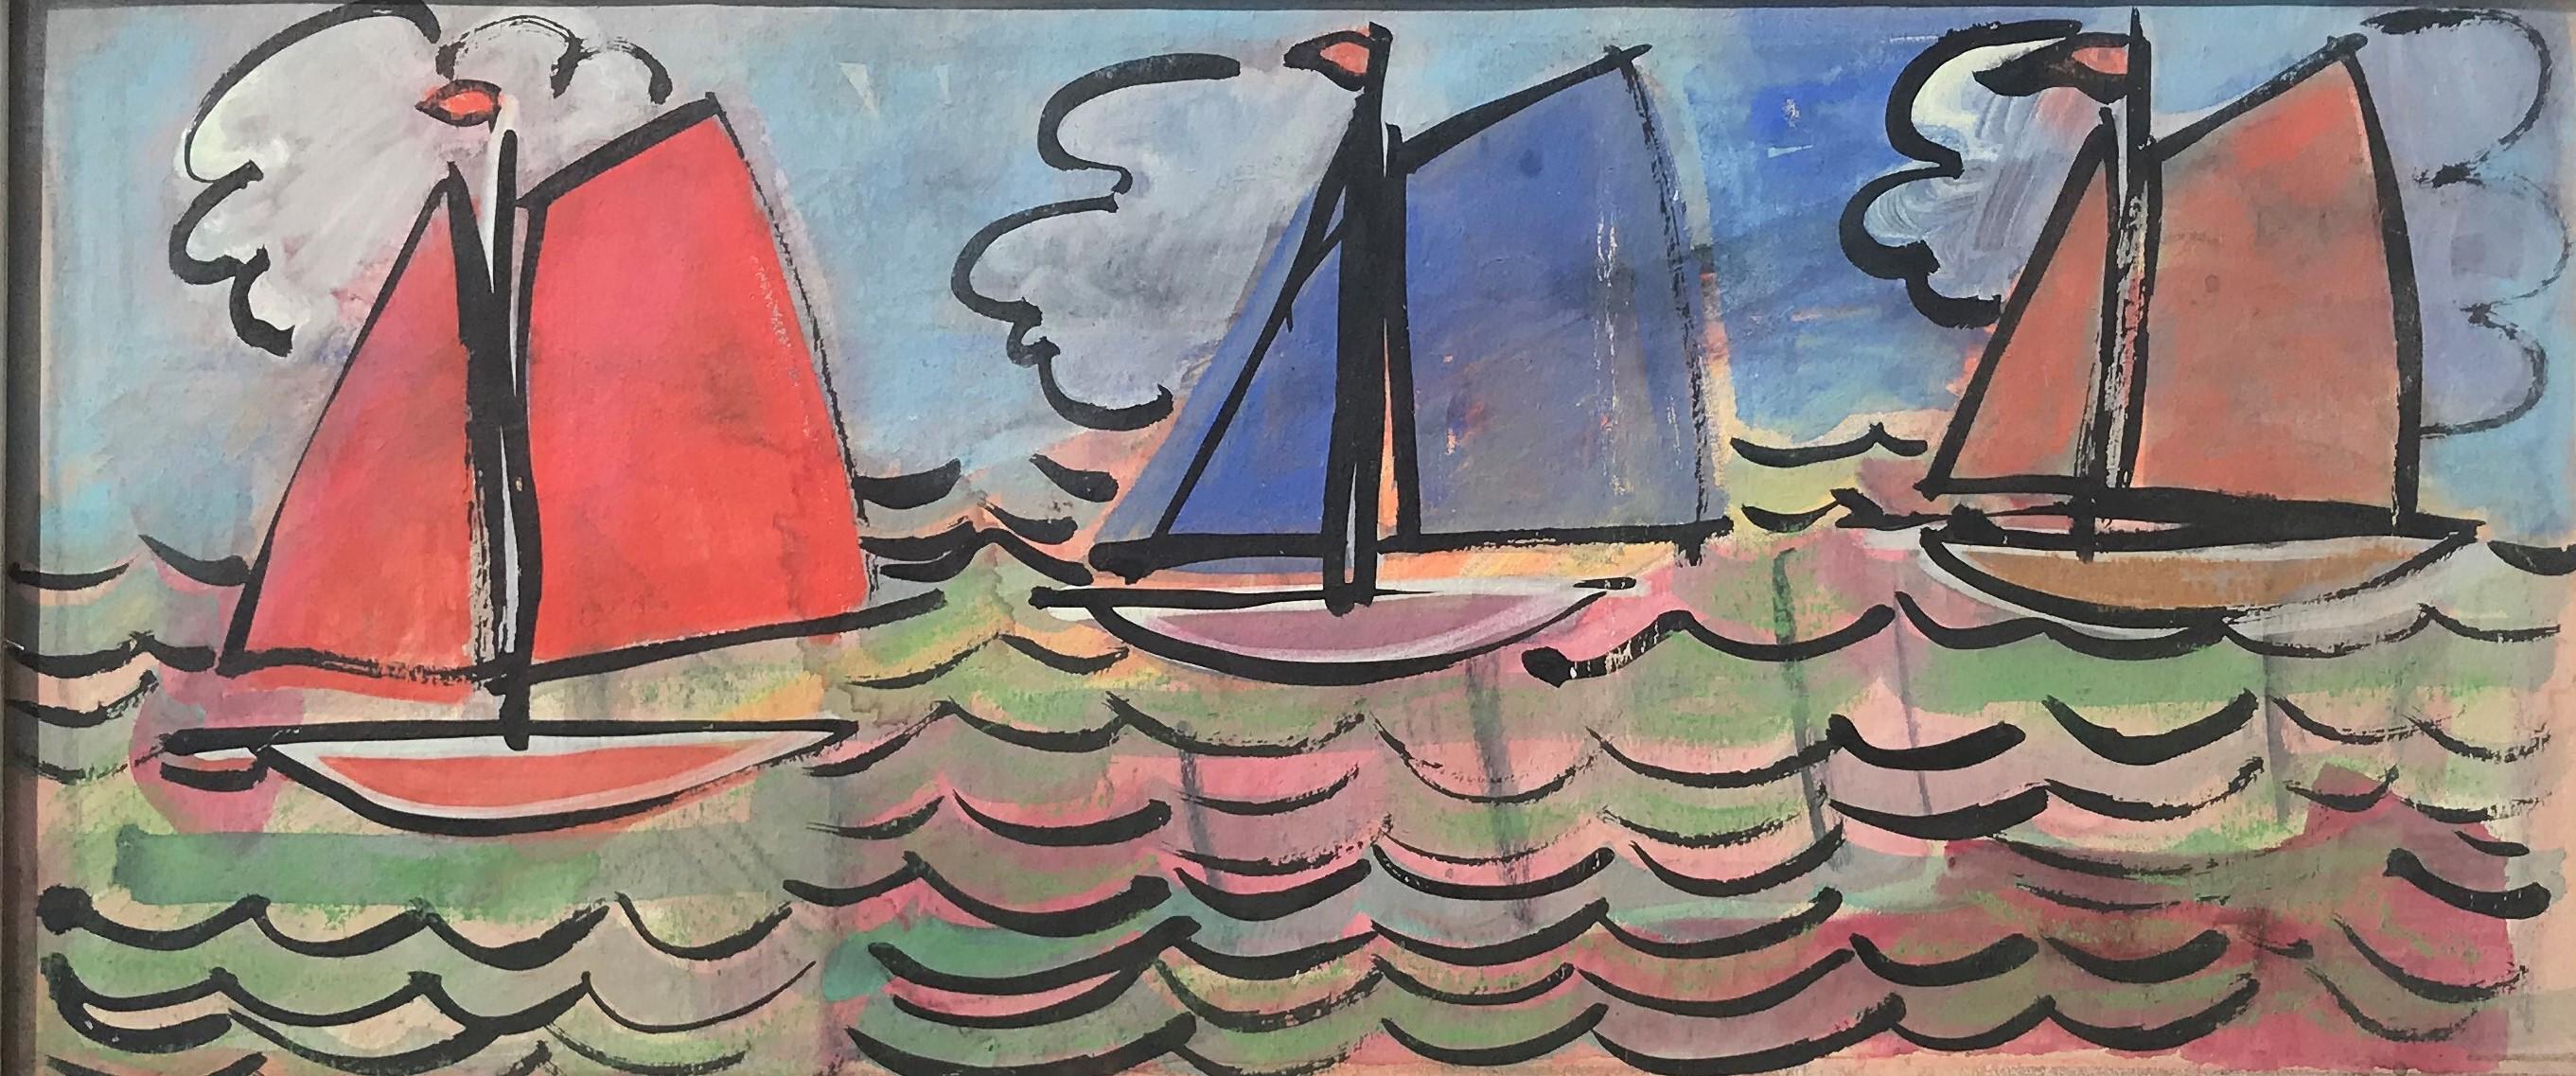 Landscape Painting Unknown - Voiliers en mer, école française du 20e siècle, huile sur toile originale colorée